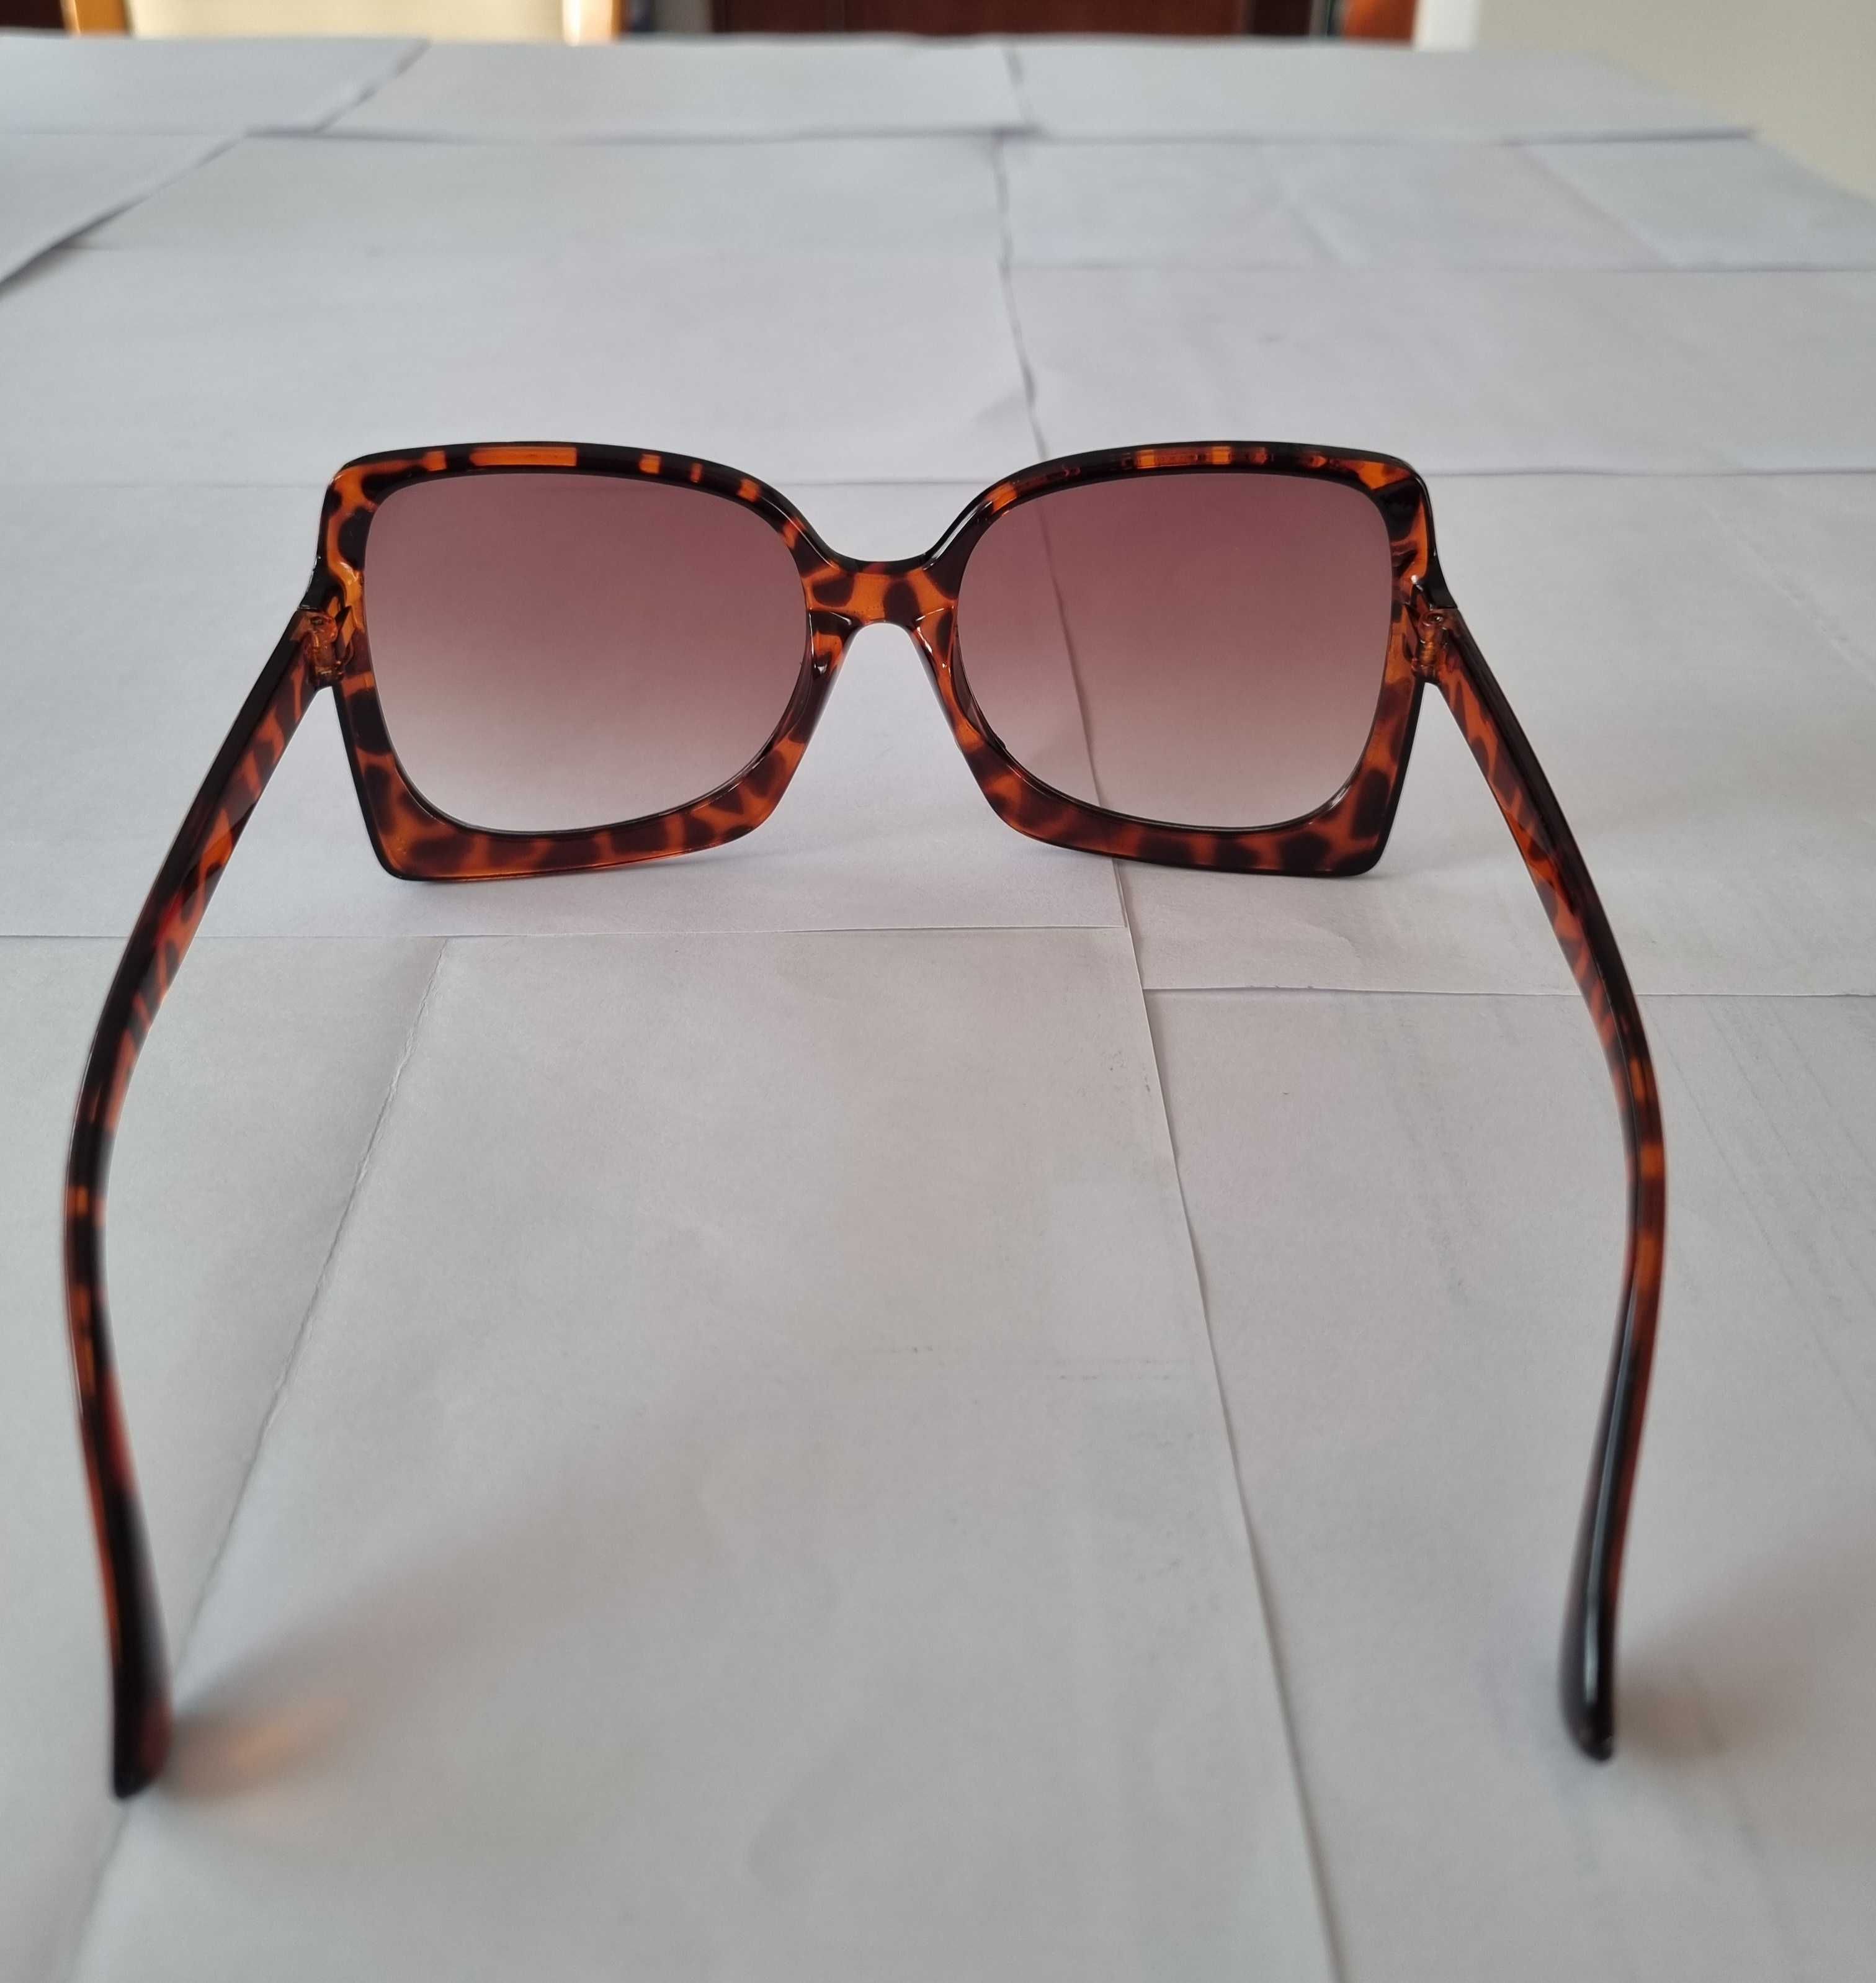 Ponadgabarytowe okulary przeciwsłoneczne Retro Vintage UV400